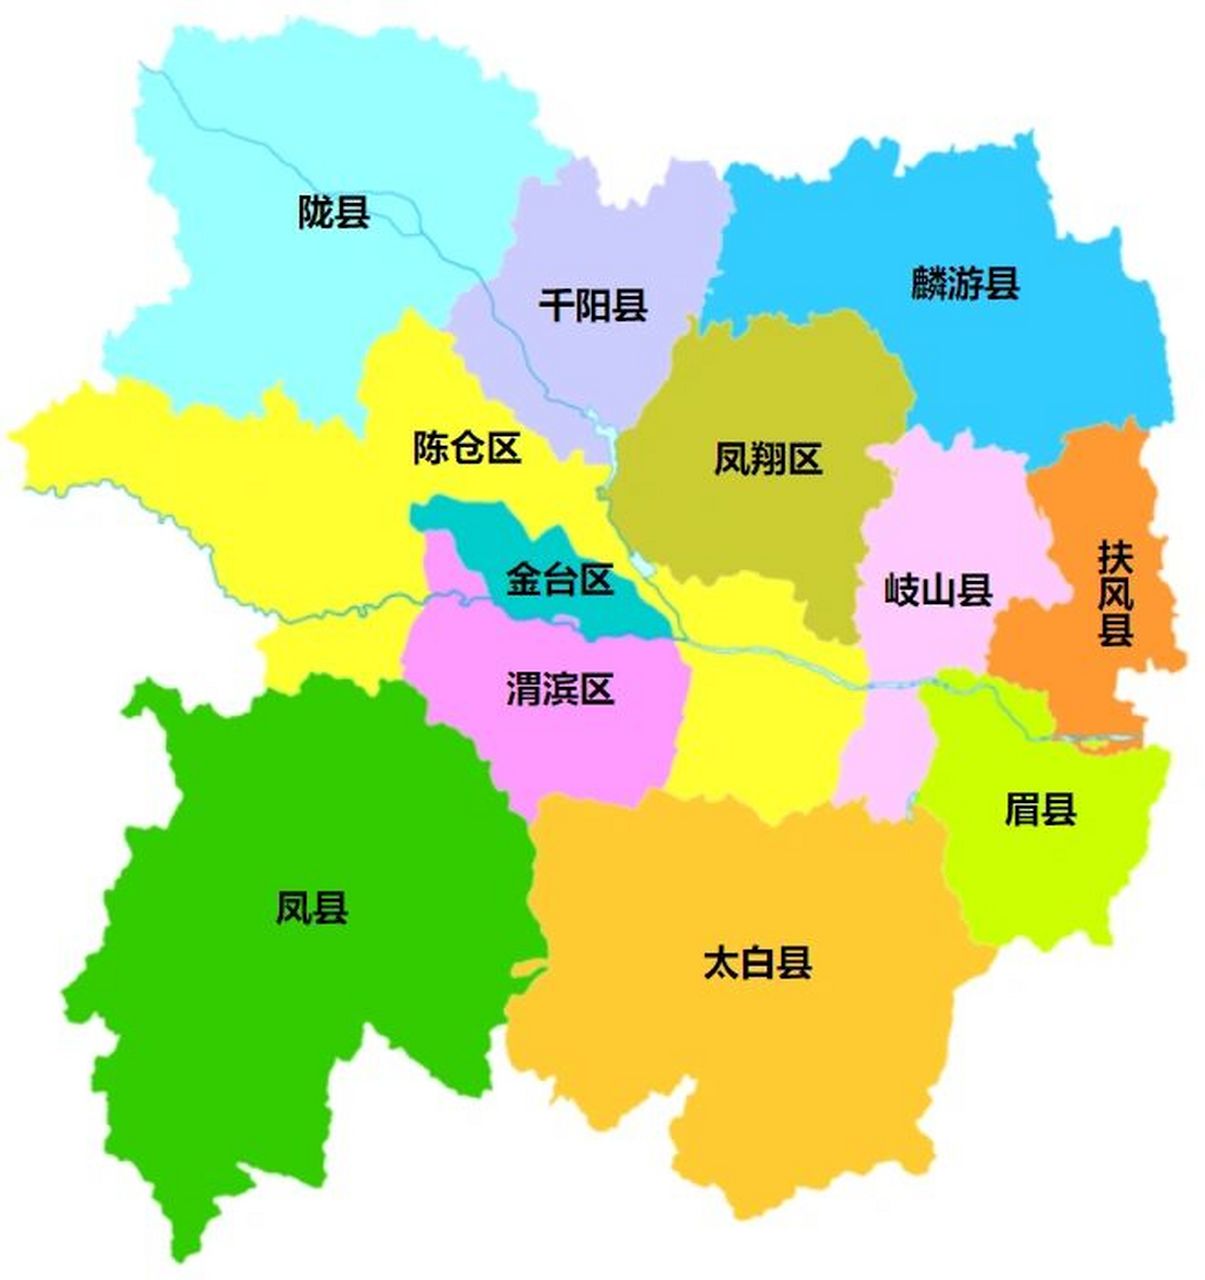 宝鸡行政区划 宝鸡市,陕西省辖地级市,总面积为18117平方公里,常住